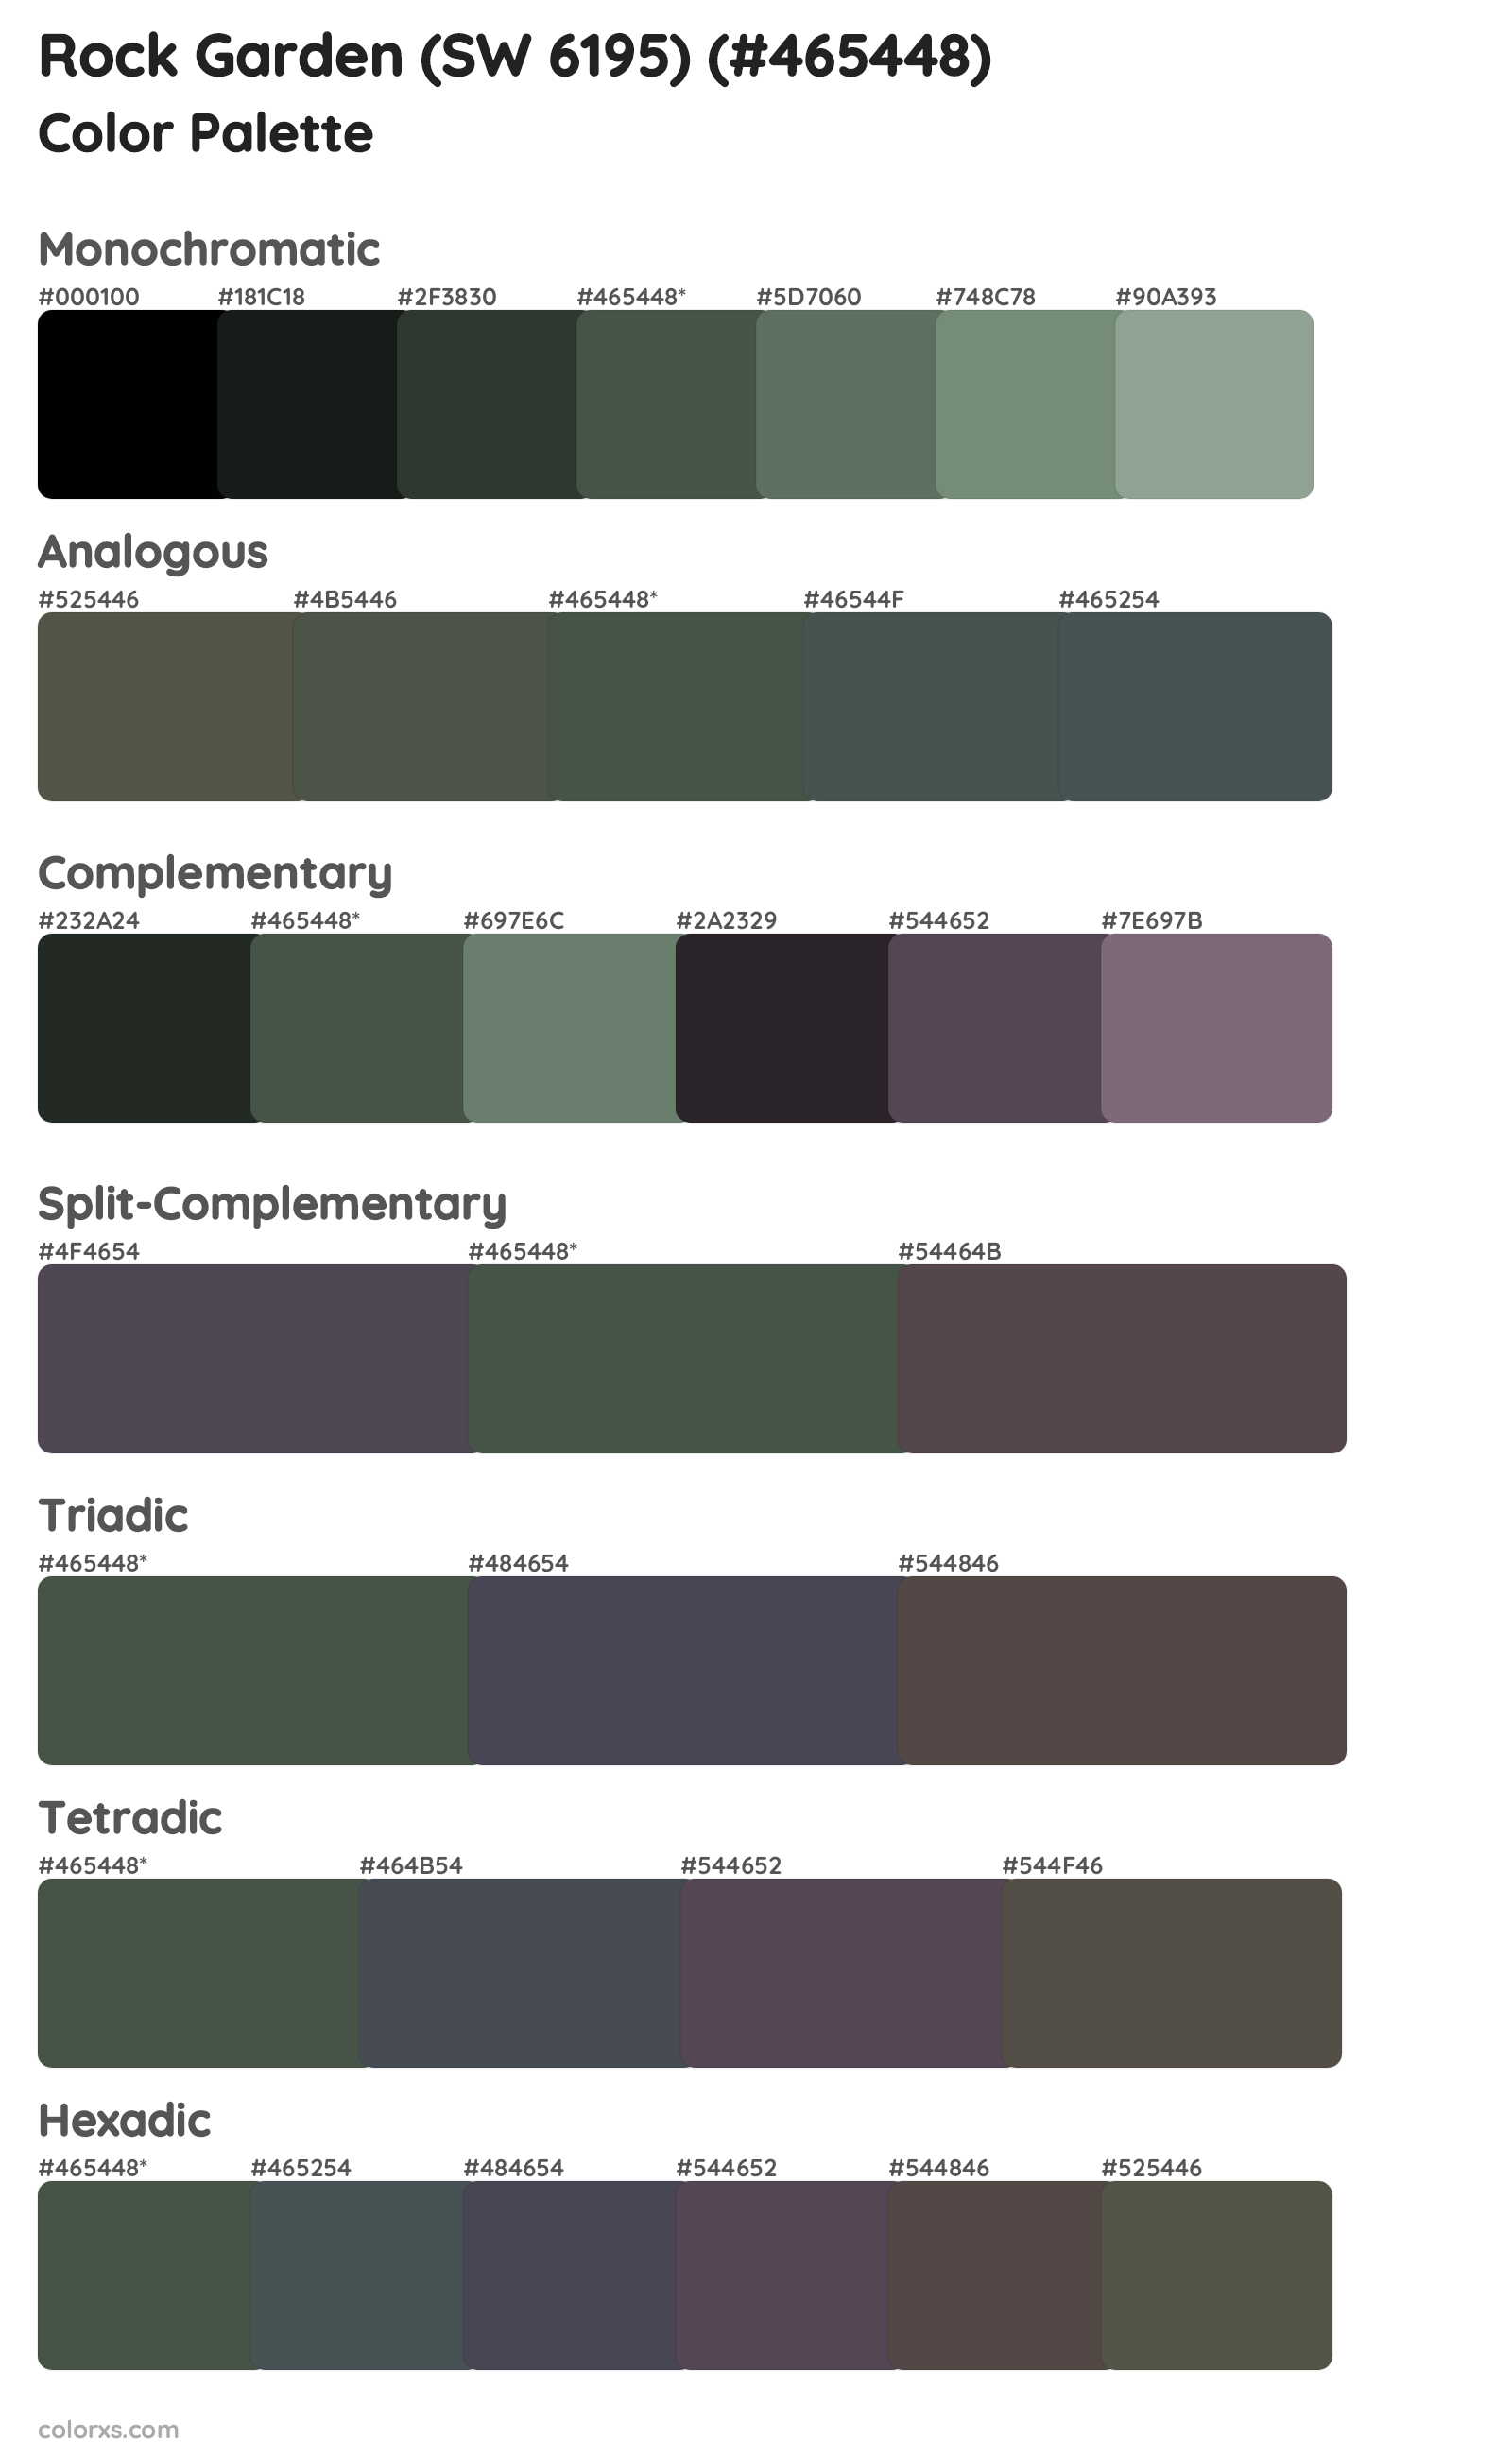 Rock Garden (SW 6195) Color Scheme Palettes